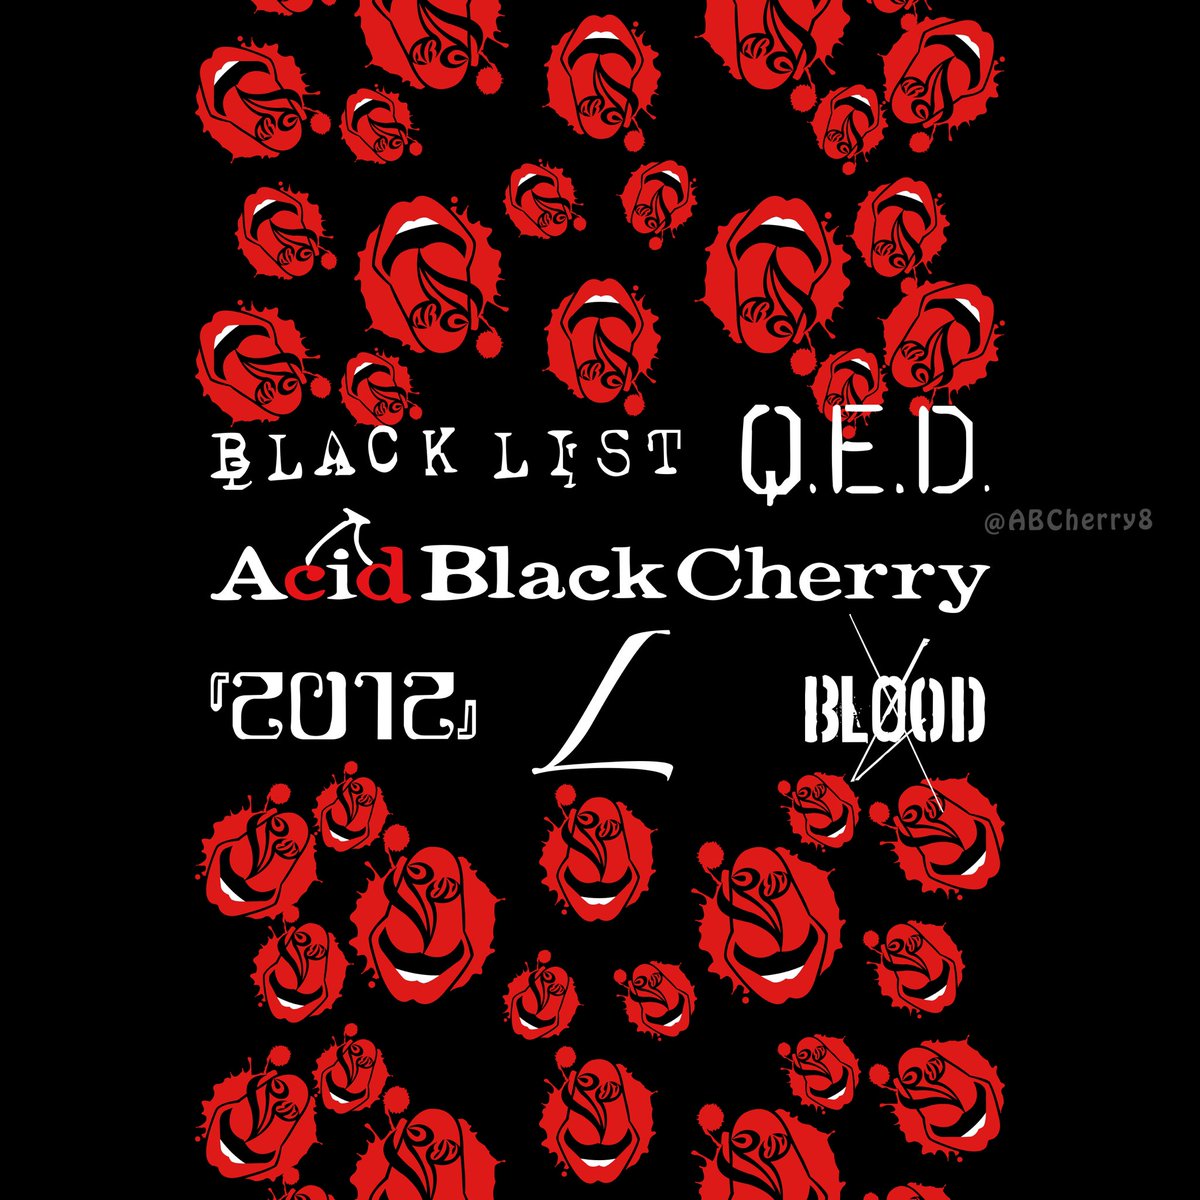 最も欲しかった Acid Black Cherry 画像 壁紙 スヌーピー写真無料ダウンロード